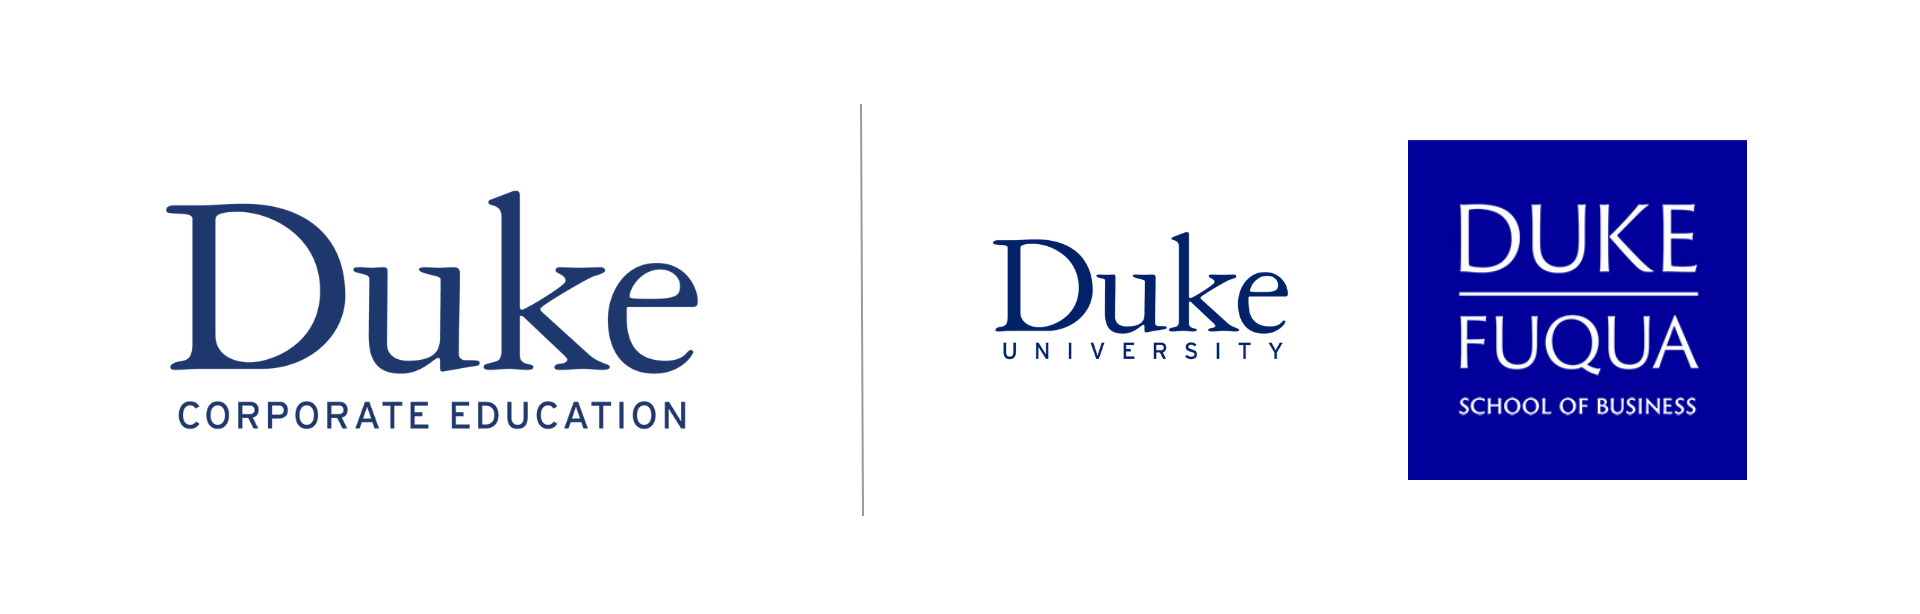 Duke CE Duke U logomark (1920 × 1080 px) white -2